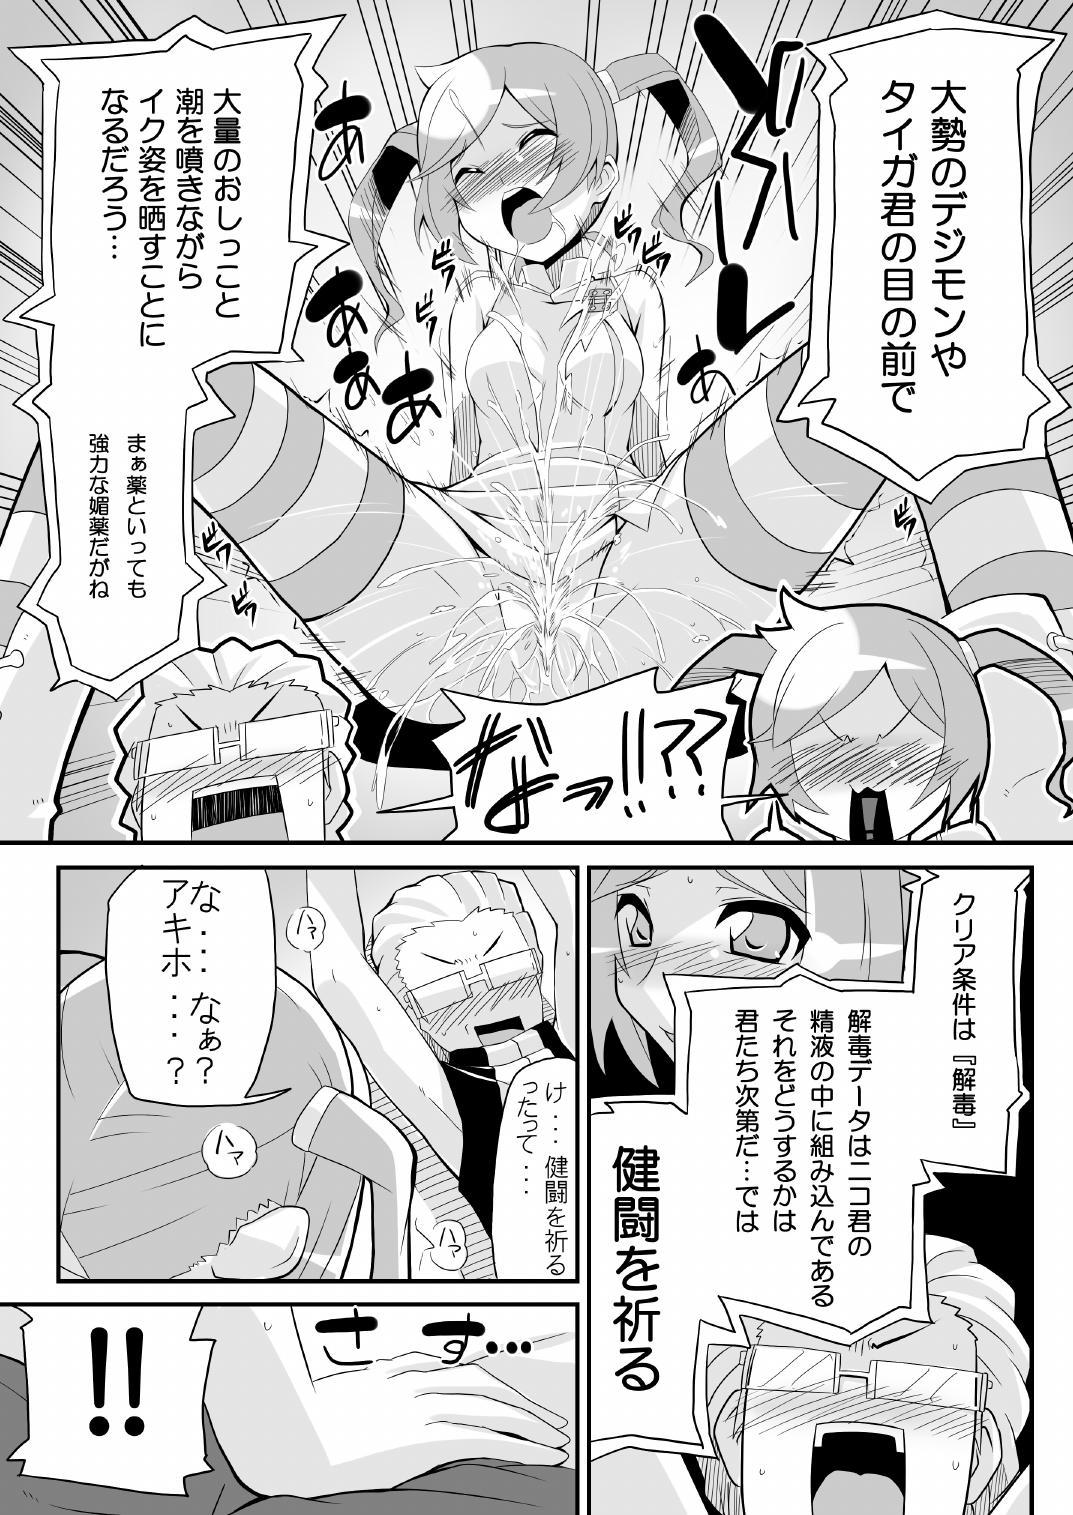 Upskirt Re:Akiho/Rinatize Ero - Digimon Puta - Page 5